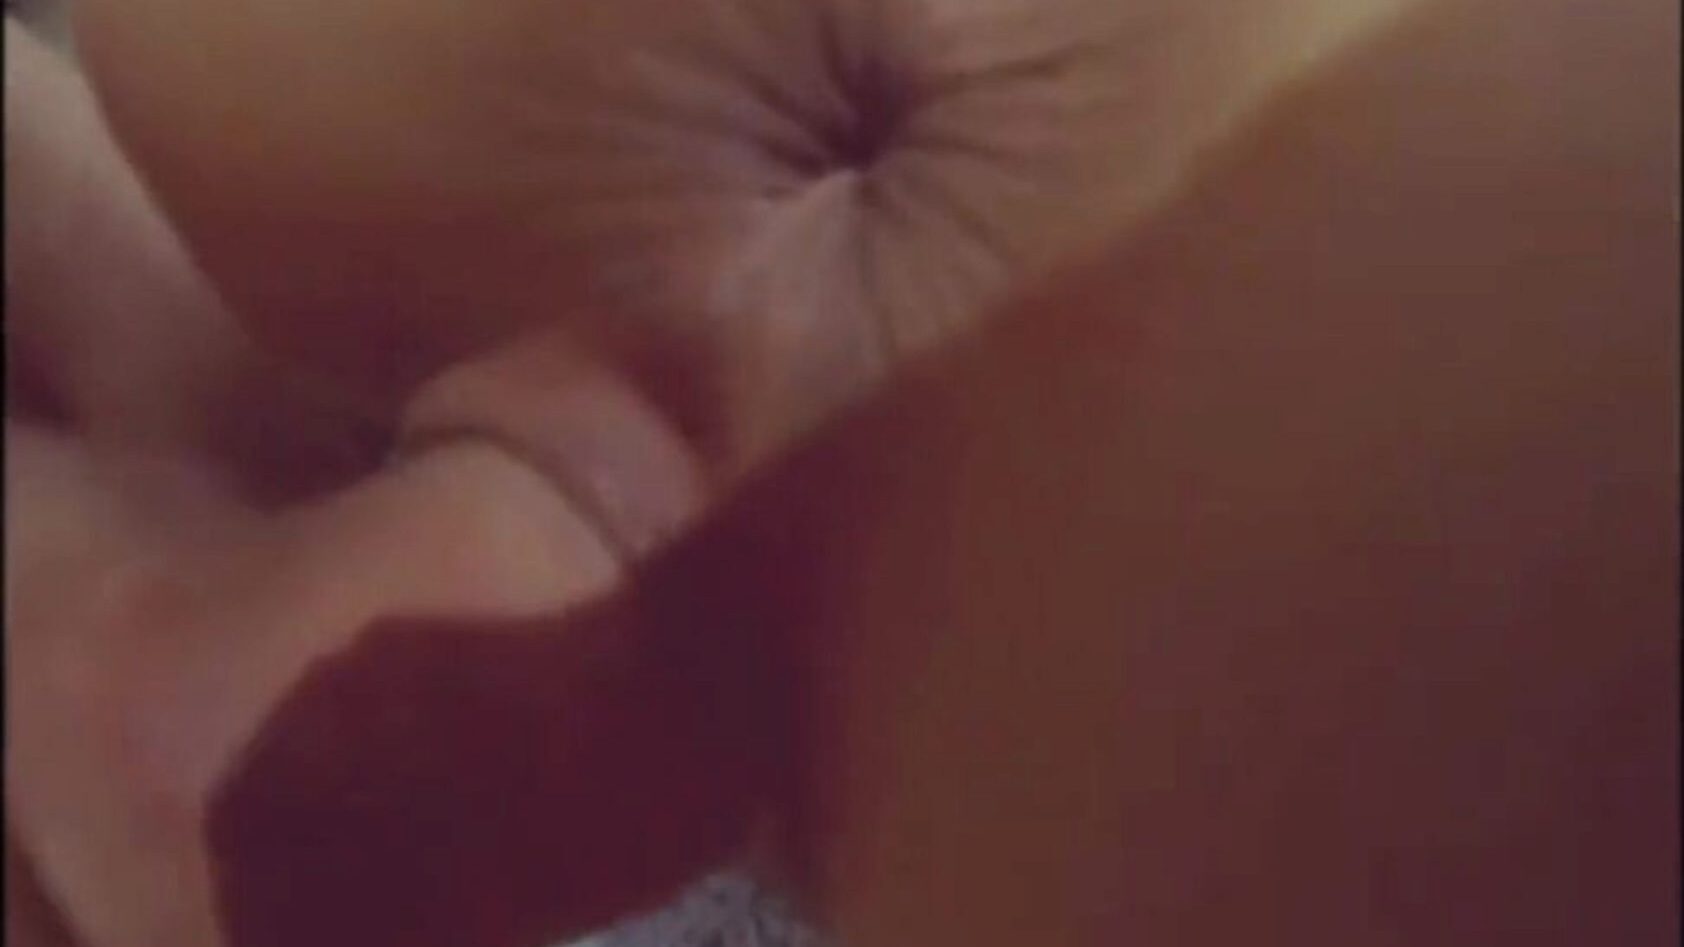 grosse bite sauvage à l'intérieur de sa chatte - trous ouverts! instagram - skinnyhotboygr